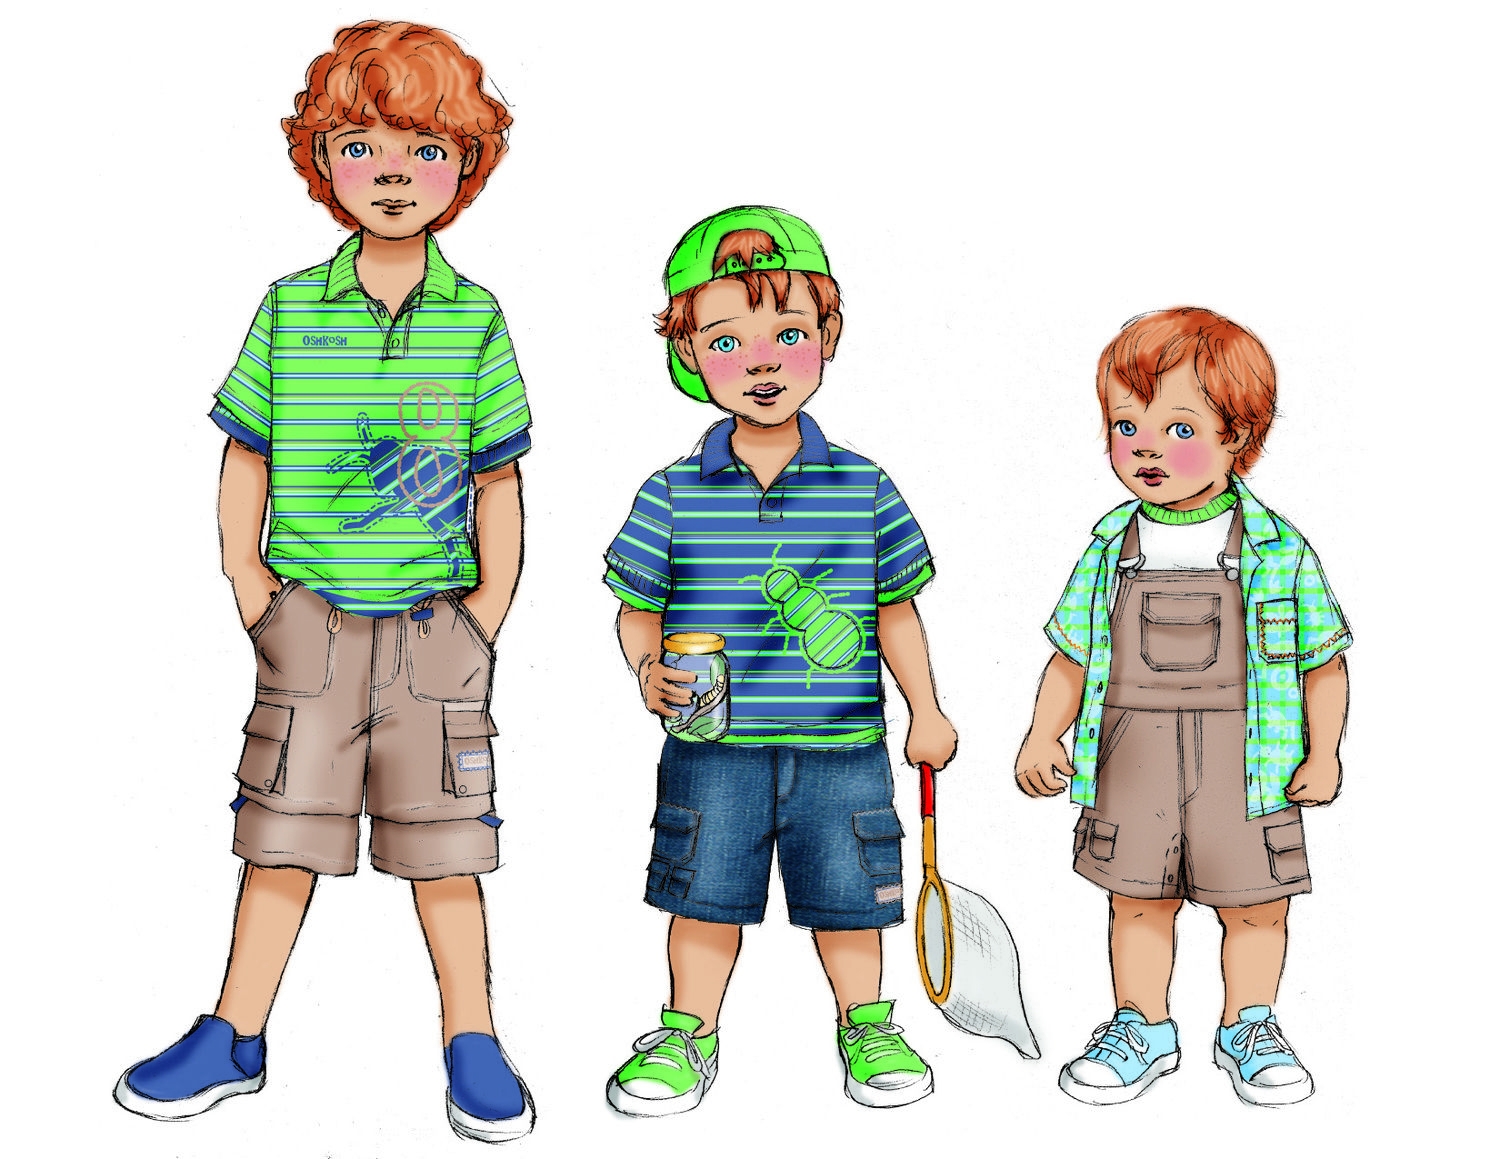 Одеваться рисунок. Рисунки для мальчиков. Иллюстрации одежды на мальчика. Аджда дла дэдцэе рисунки. Мультяшная одежда для мальчиков.